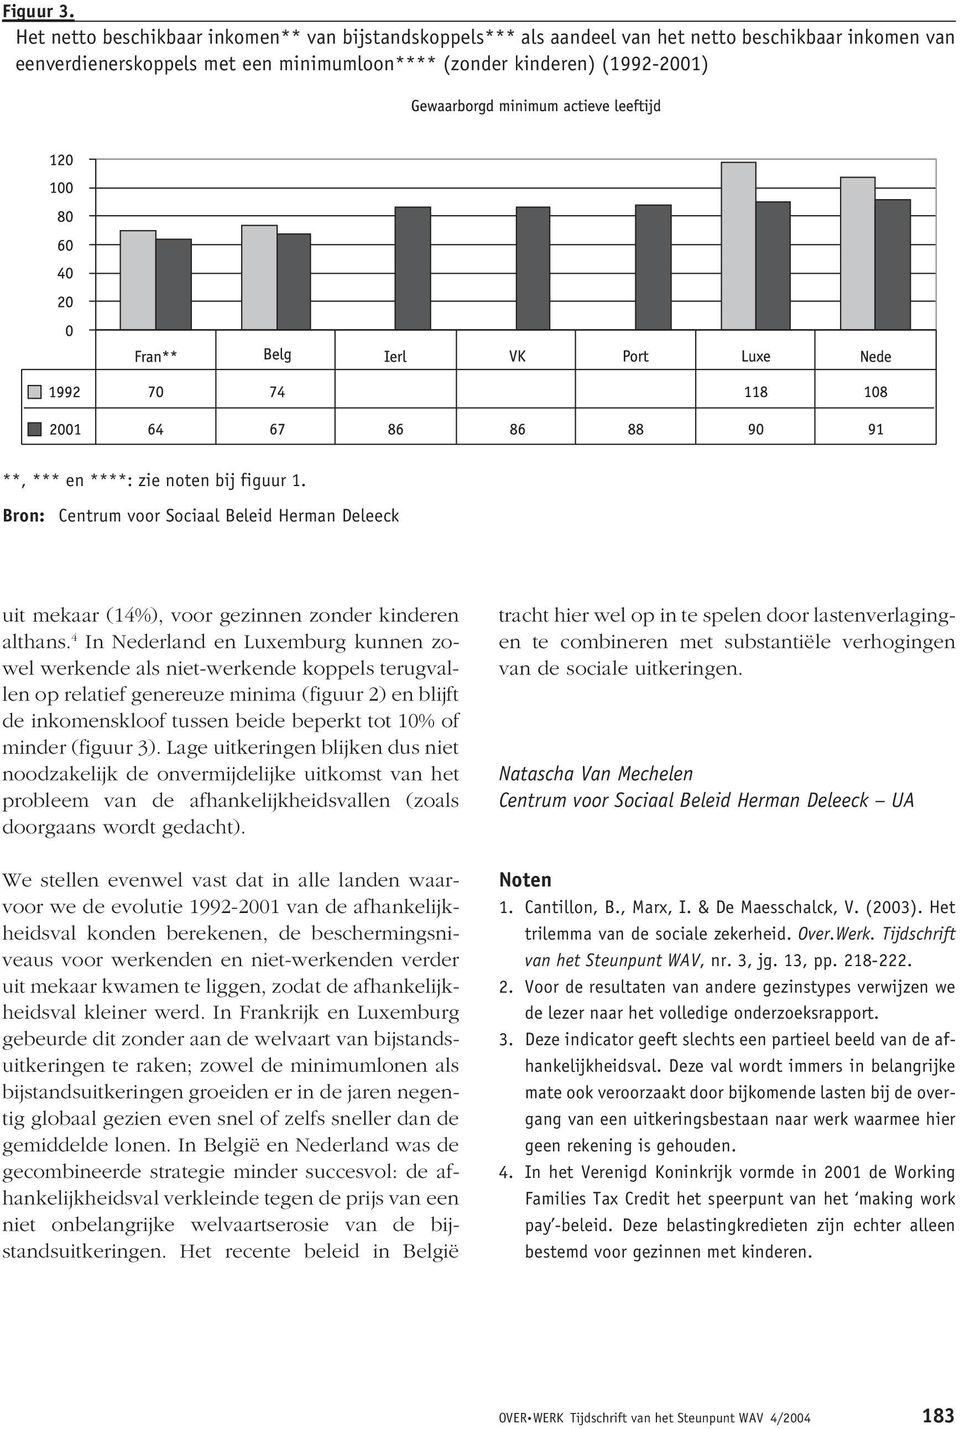 zie noten bij figuur 1. Bron: Centrum voor Sociaal Beleid Herman Deleeck uit mekaar (14%), voor gezinnen zonder kinderen althans.